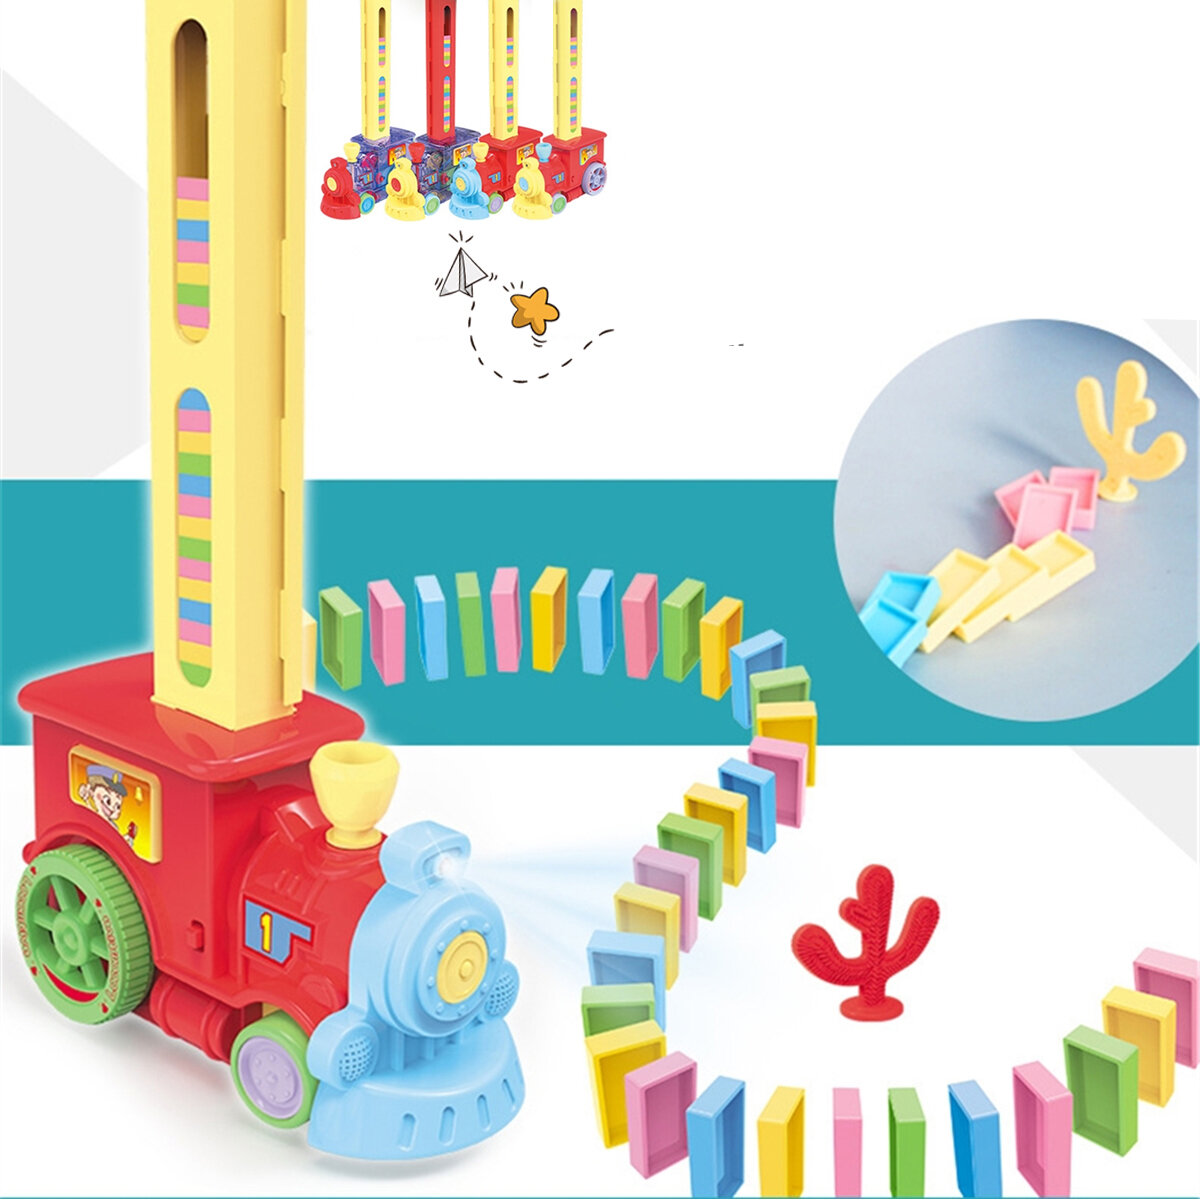 Domino Train Car Set Bridge kit Colorful Plastic Dominoes Block Children Toys Christmas Birthday Gift for Kids Boy Girl